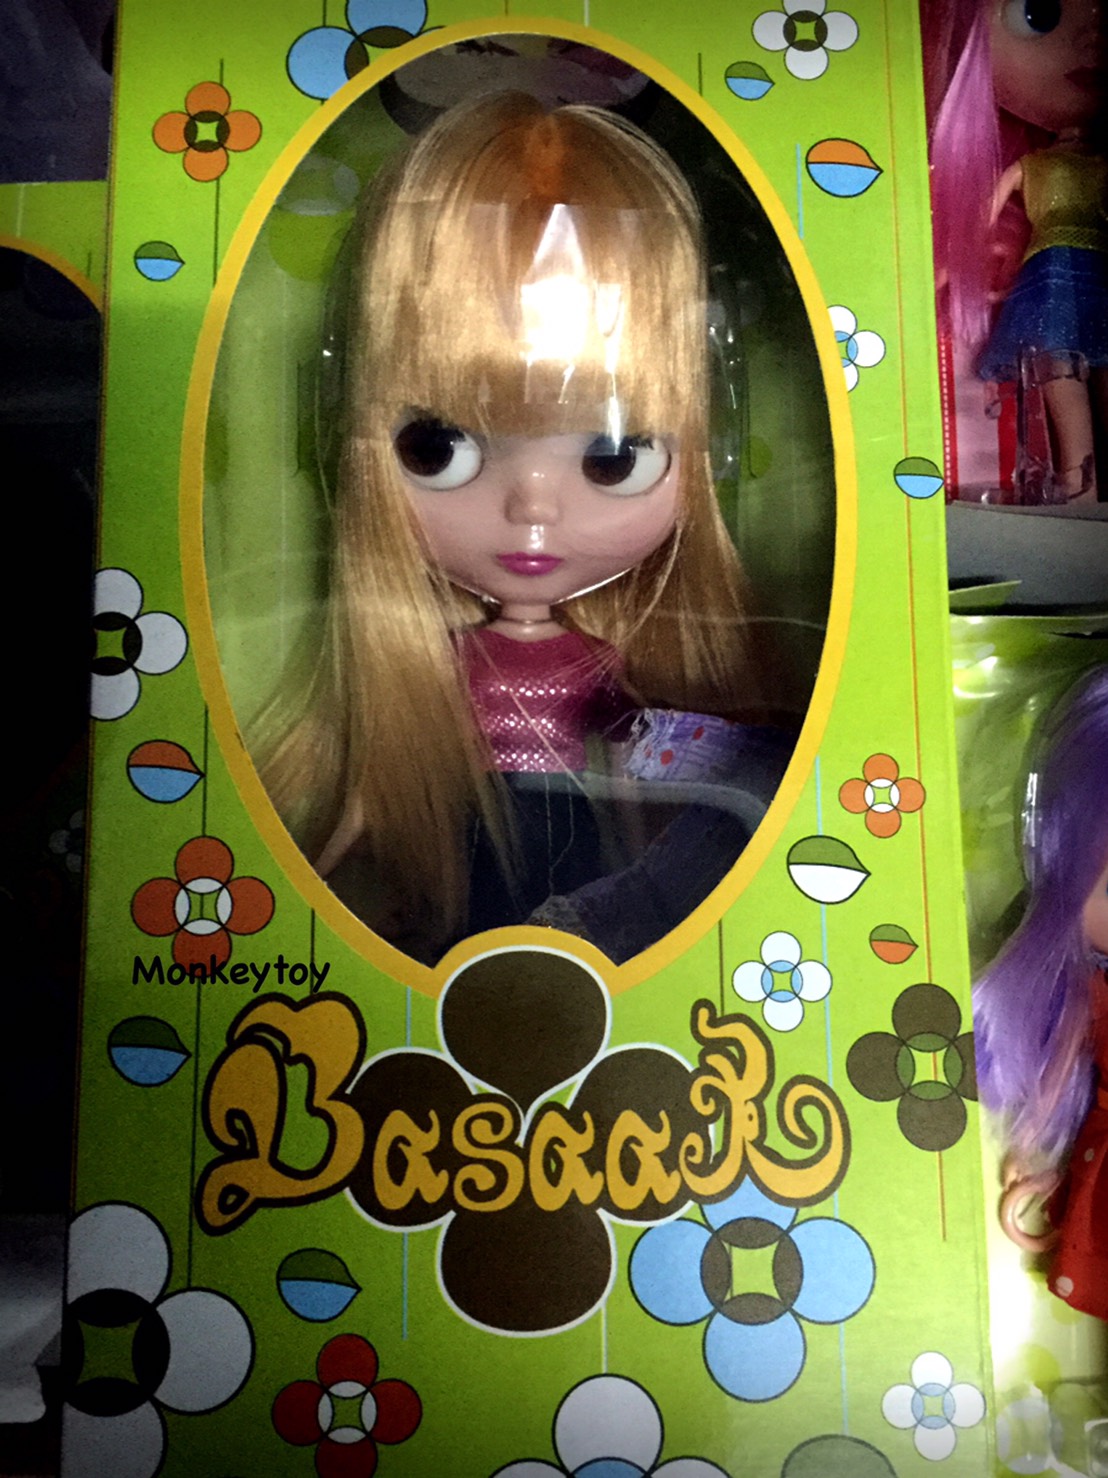 ขายตุ๊กตา Blythe ปลอม รุ่น Basaak น้องคล้ายบลายธ์ น่ารักๆ บอดี้เท่าของแท้ ราคาตัวละ 550 รวมส่งฟรีลงทะเบียน รูปที่ 1